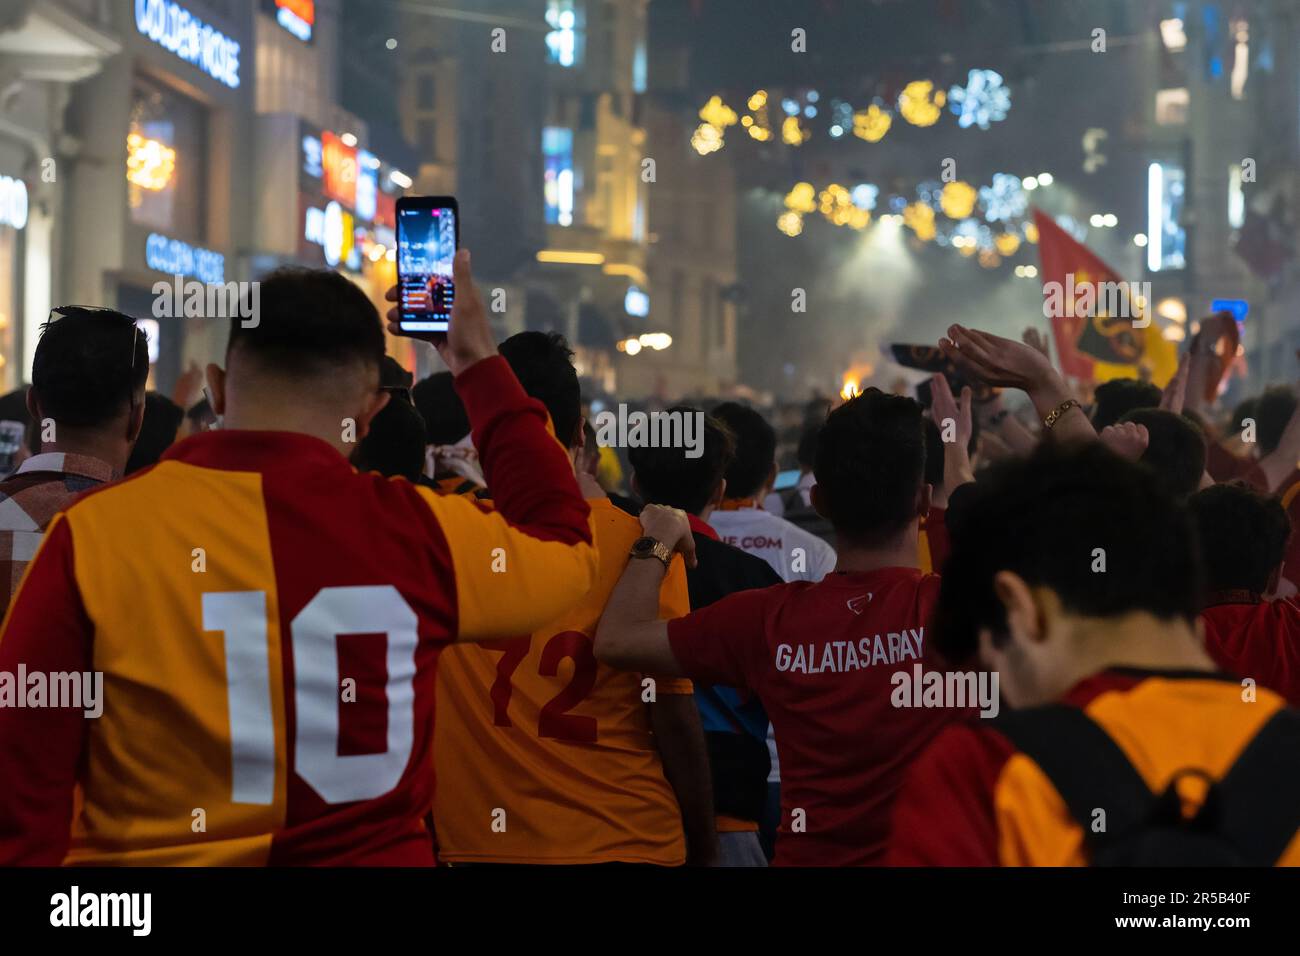 Groupe de fans avec des chemises Galatasaray leur dos tourné, célébration du championnat Galatasaray à Istanbul, les fans célèbrent Banque D'Images